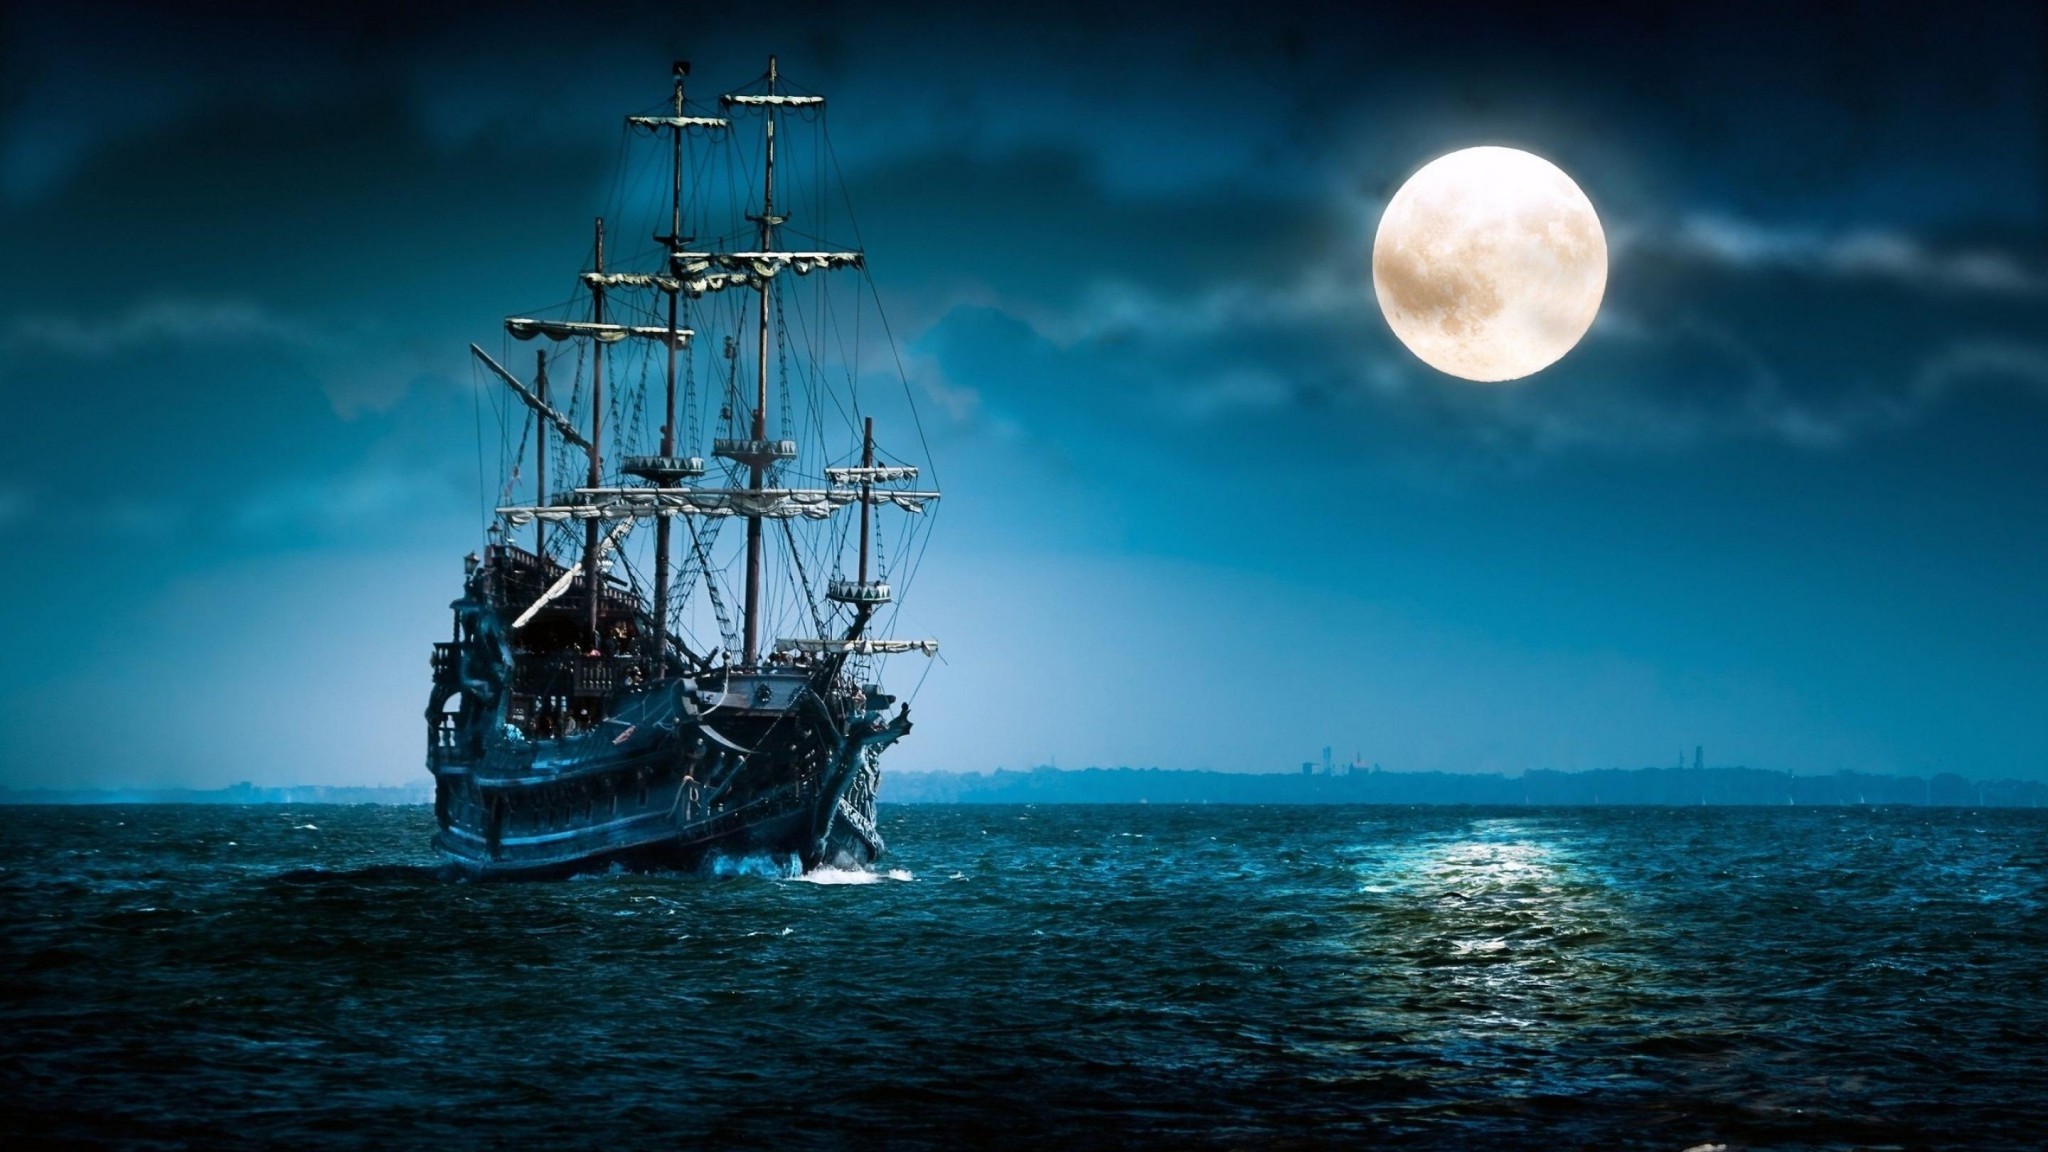 Download 2048x1152 New Moon Sailboat Wallpaper Hd